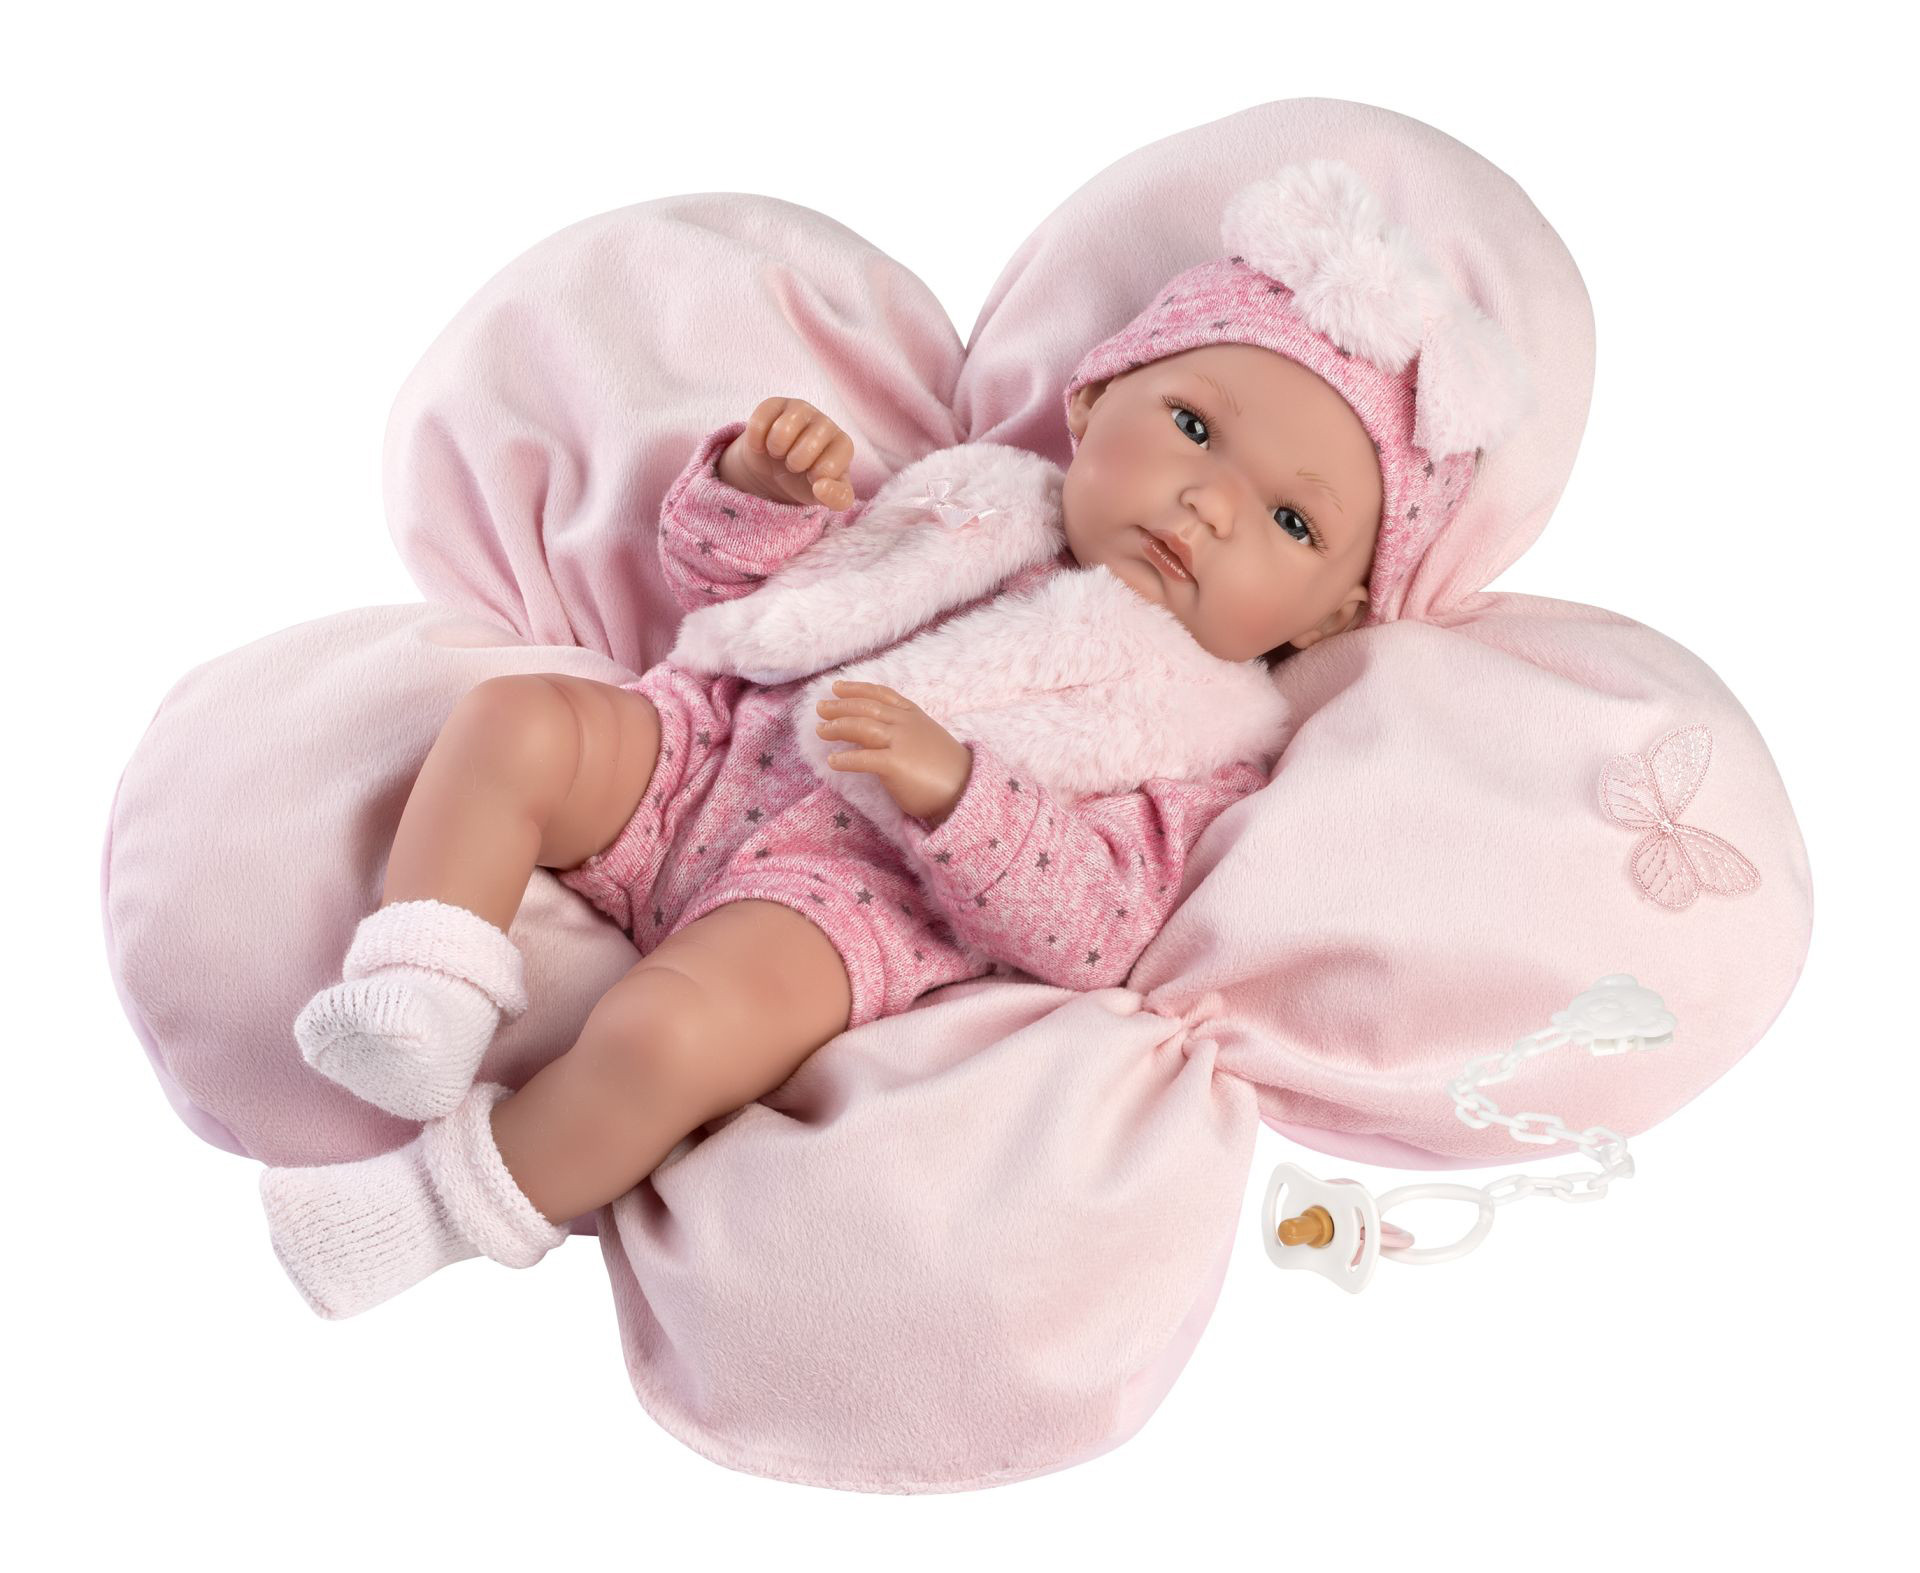 Llorens 63592 NEW BORN HOLČIČKA - realistická panenka miminko s celovinylovým tělem -35 cm